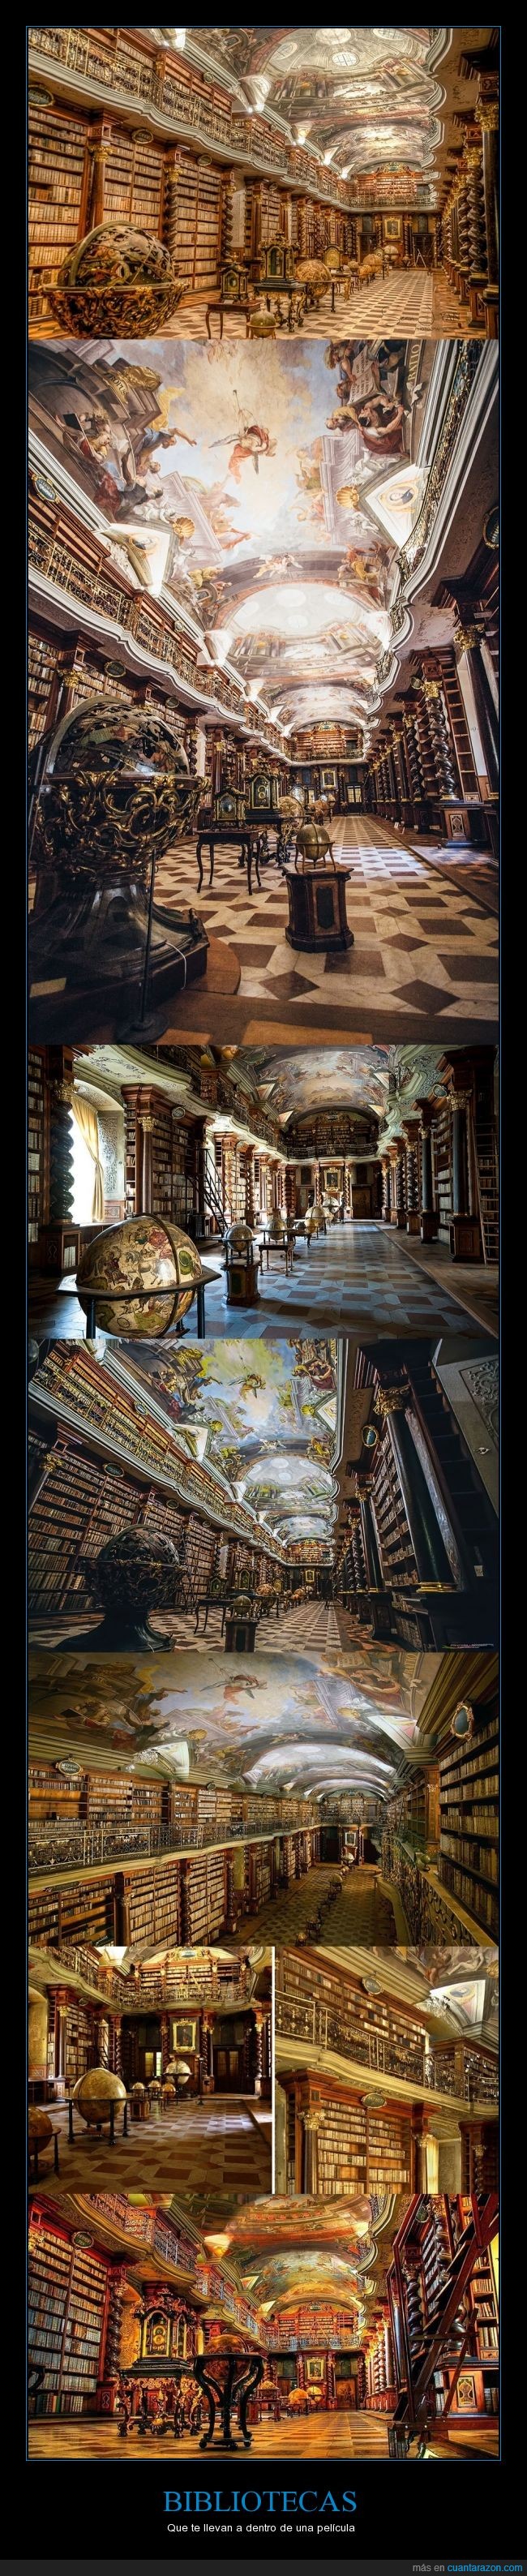 cultura,libros,bibliotecas impresionantes,republica checa,praga